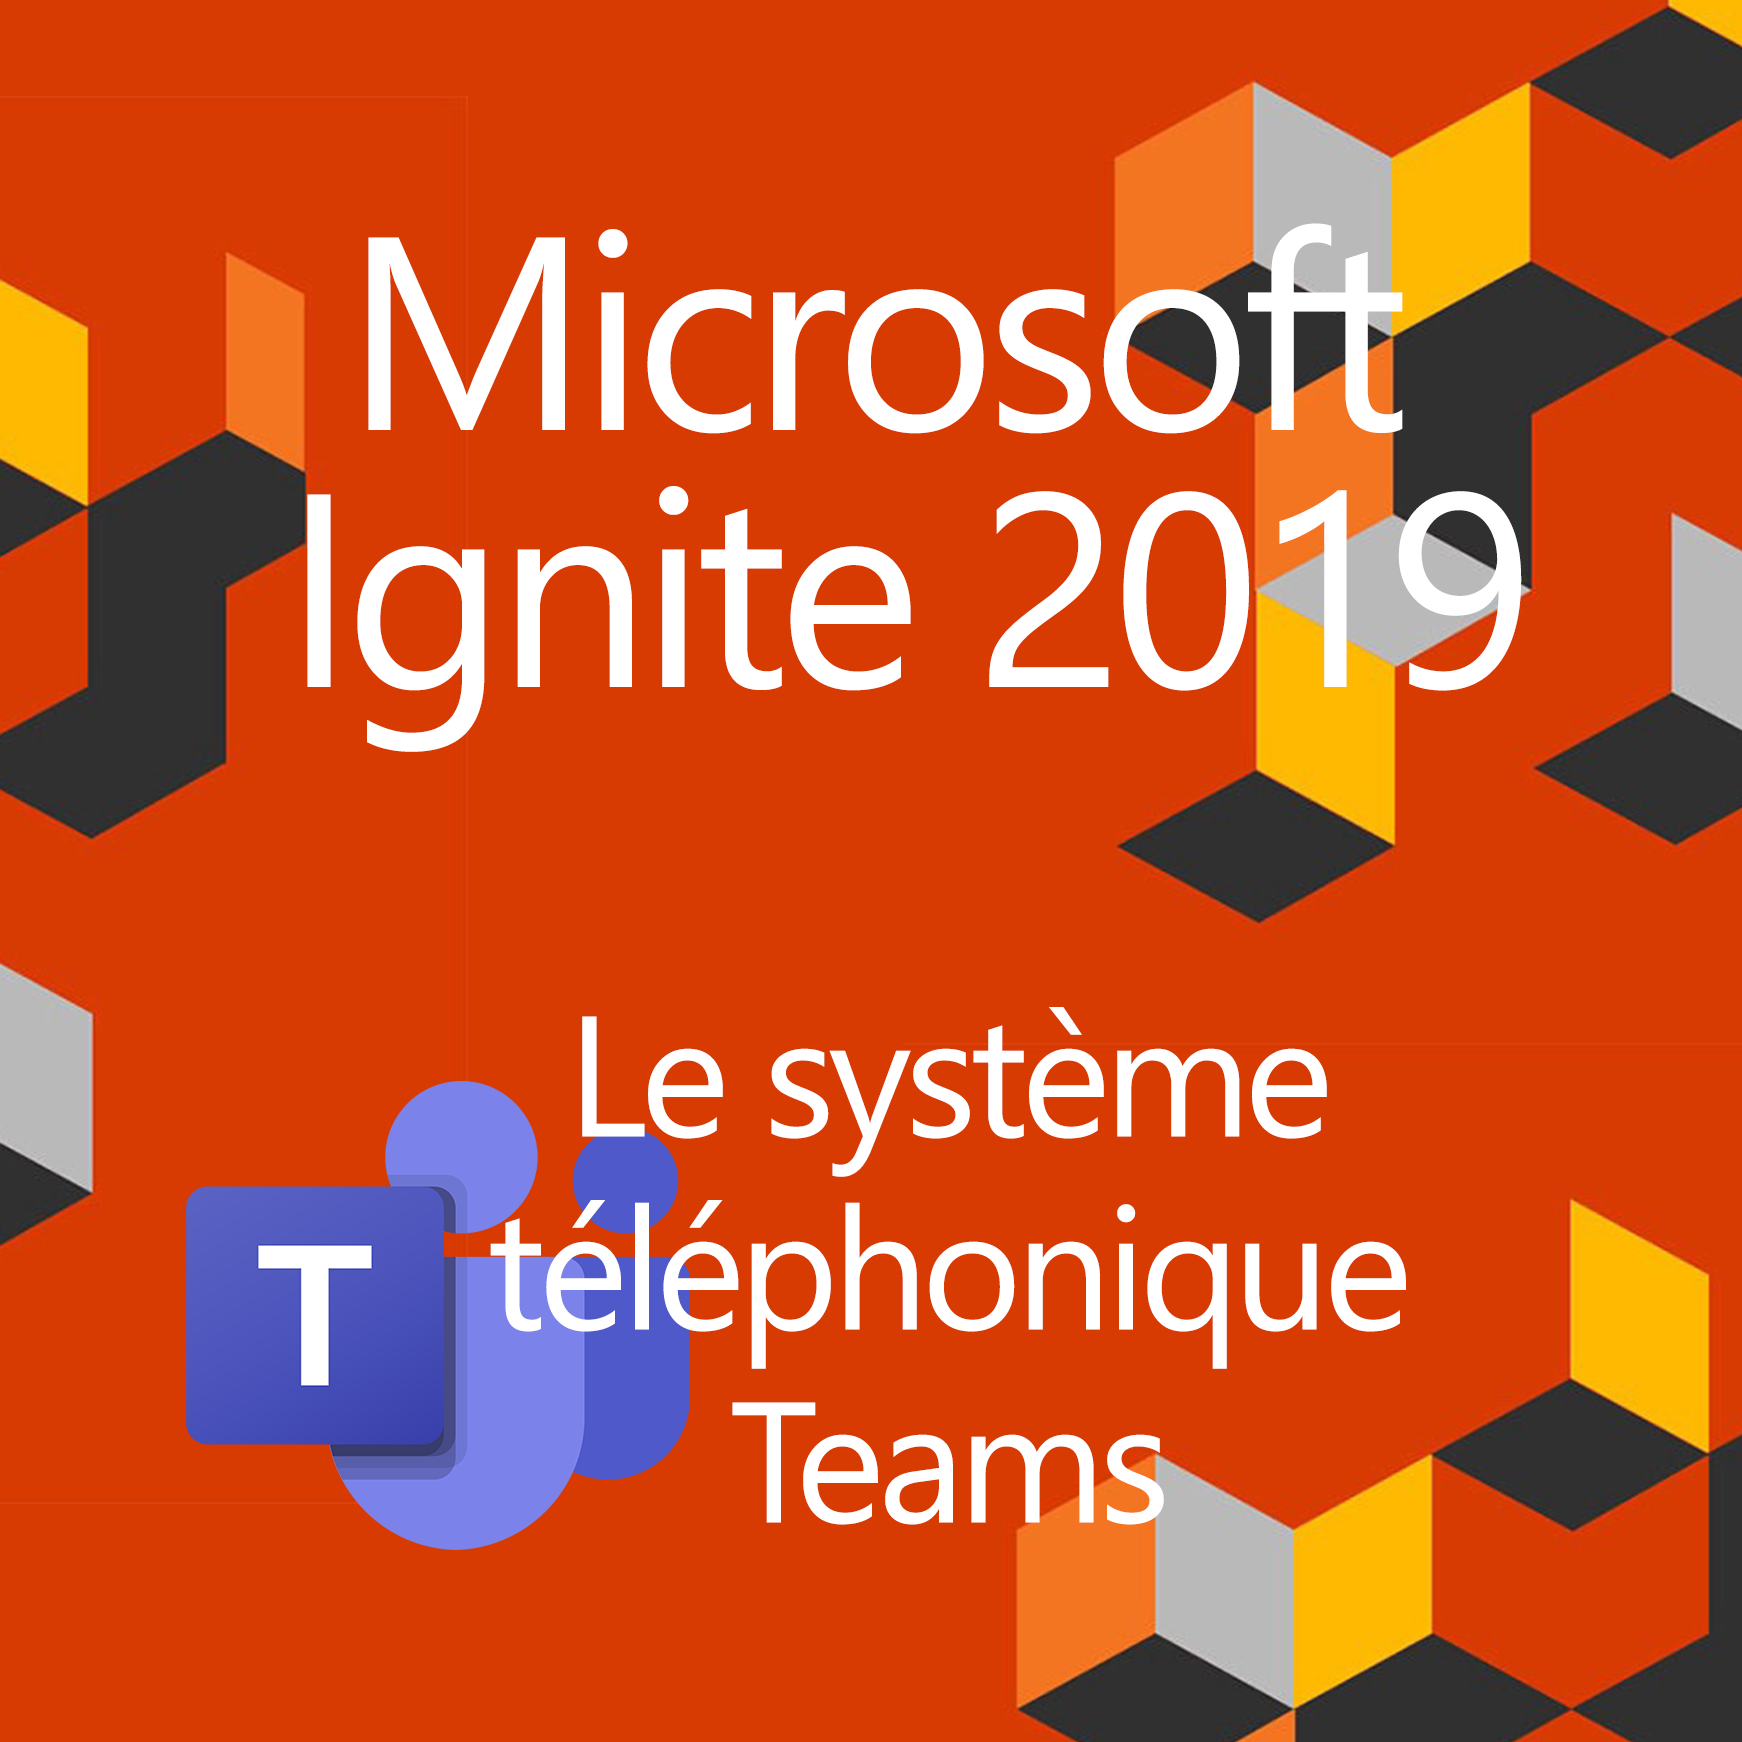 Ignite 2019 : Les nouveautés téléphoniques Teams à découvrir !